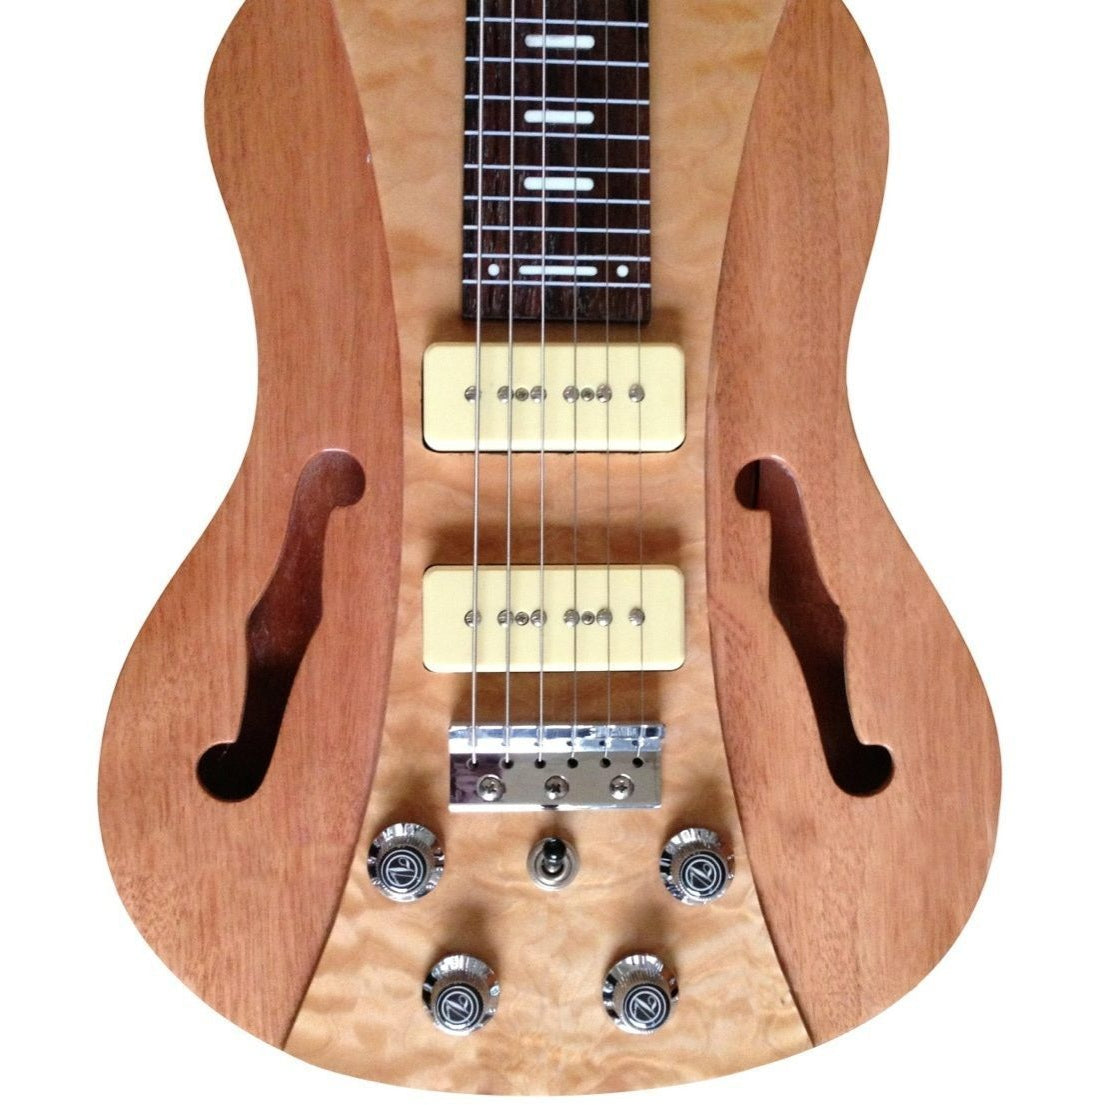 Vorson FLSL-220 Pro Lap Steel Guitar with F-Holes, Natural